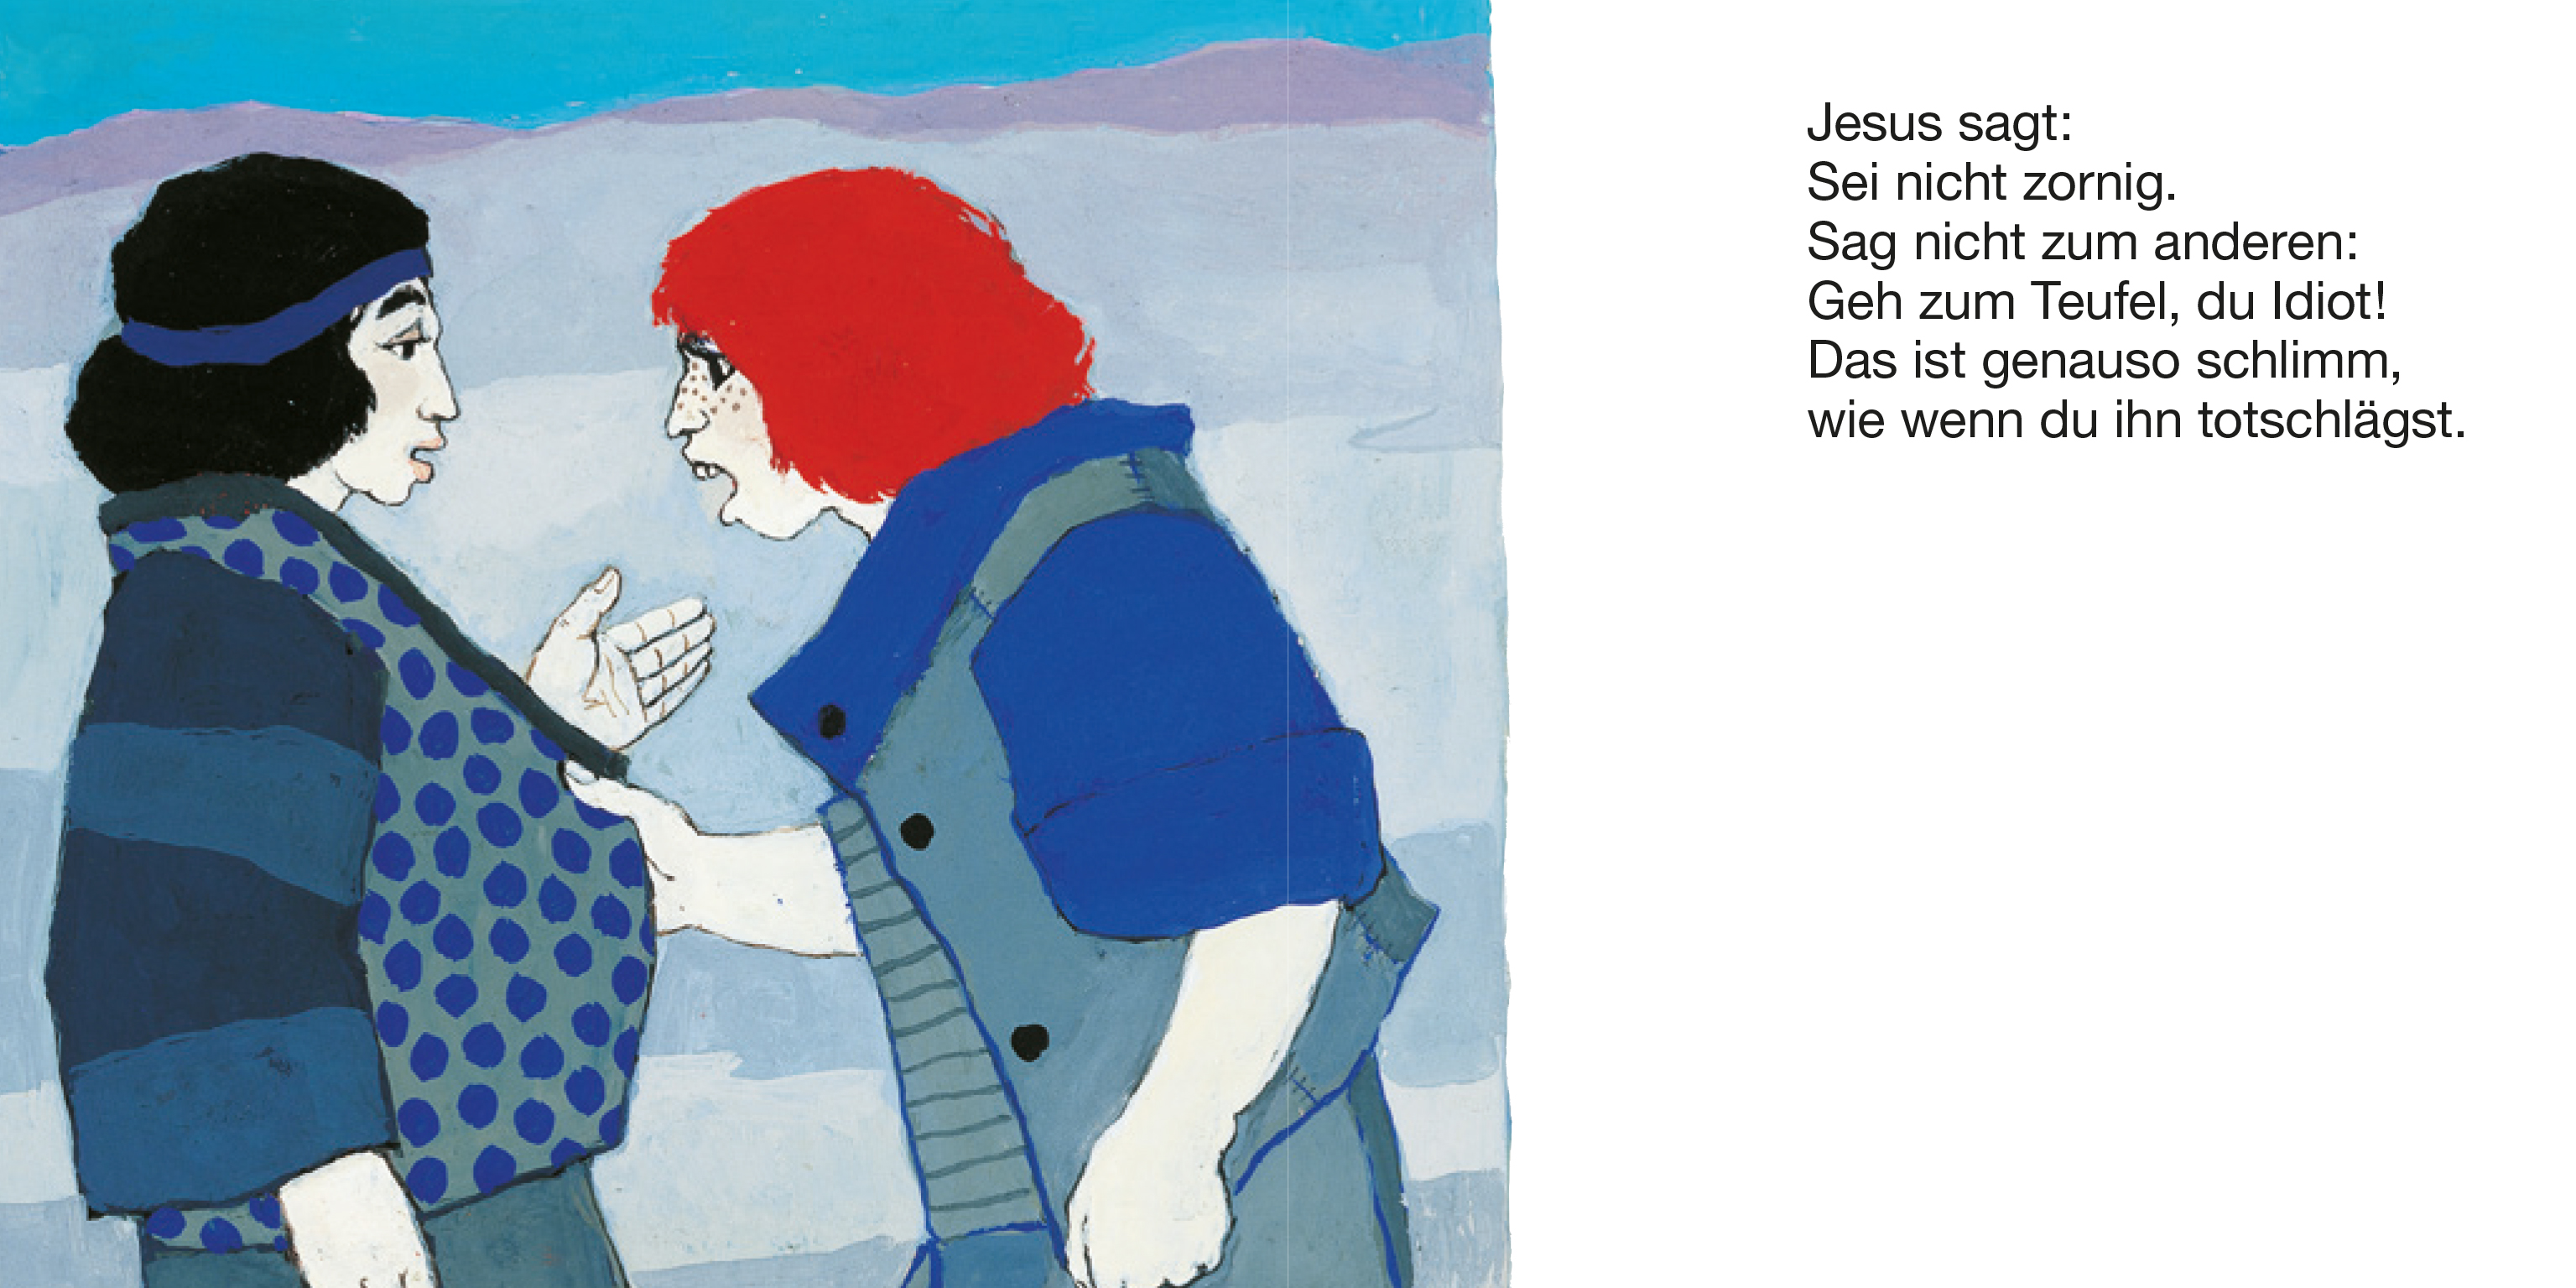 Jesus und seine Jünger (4er-Pack)